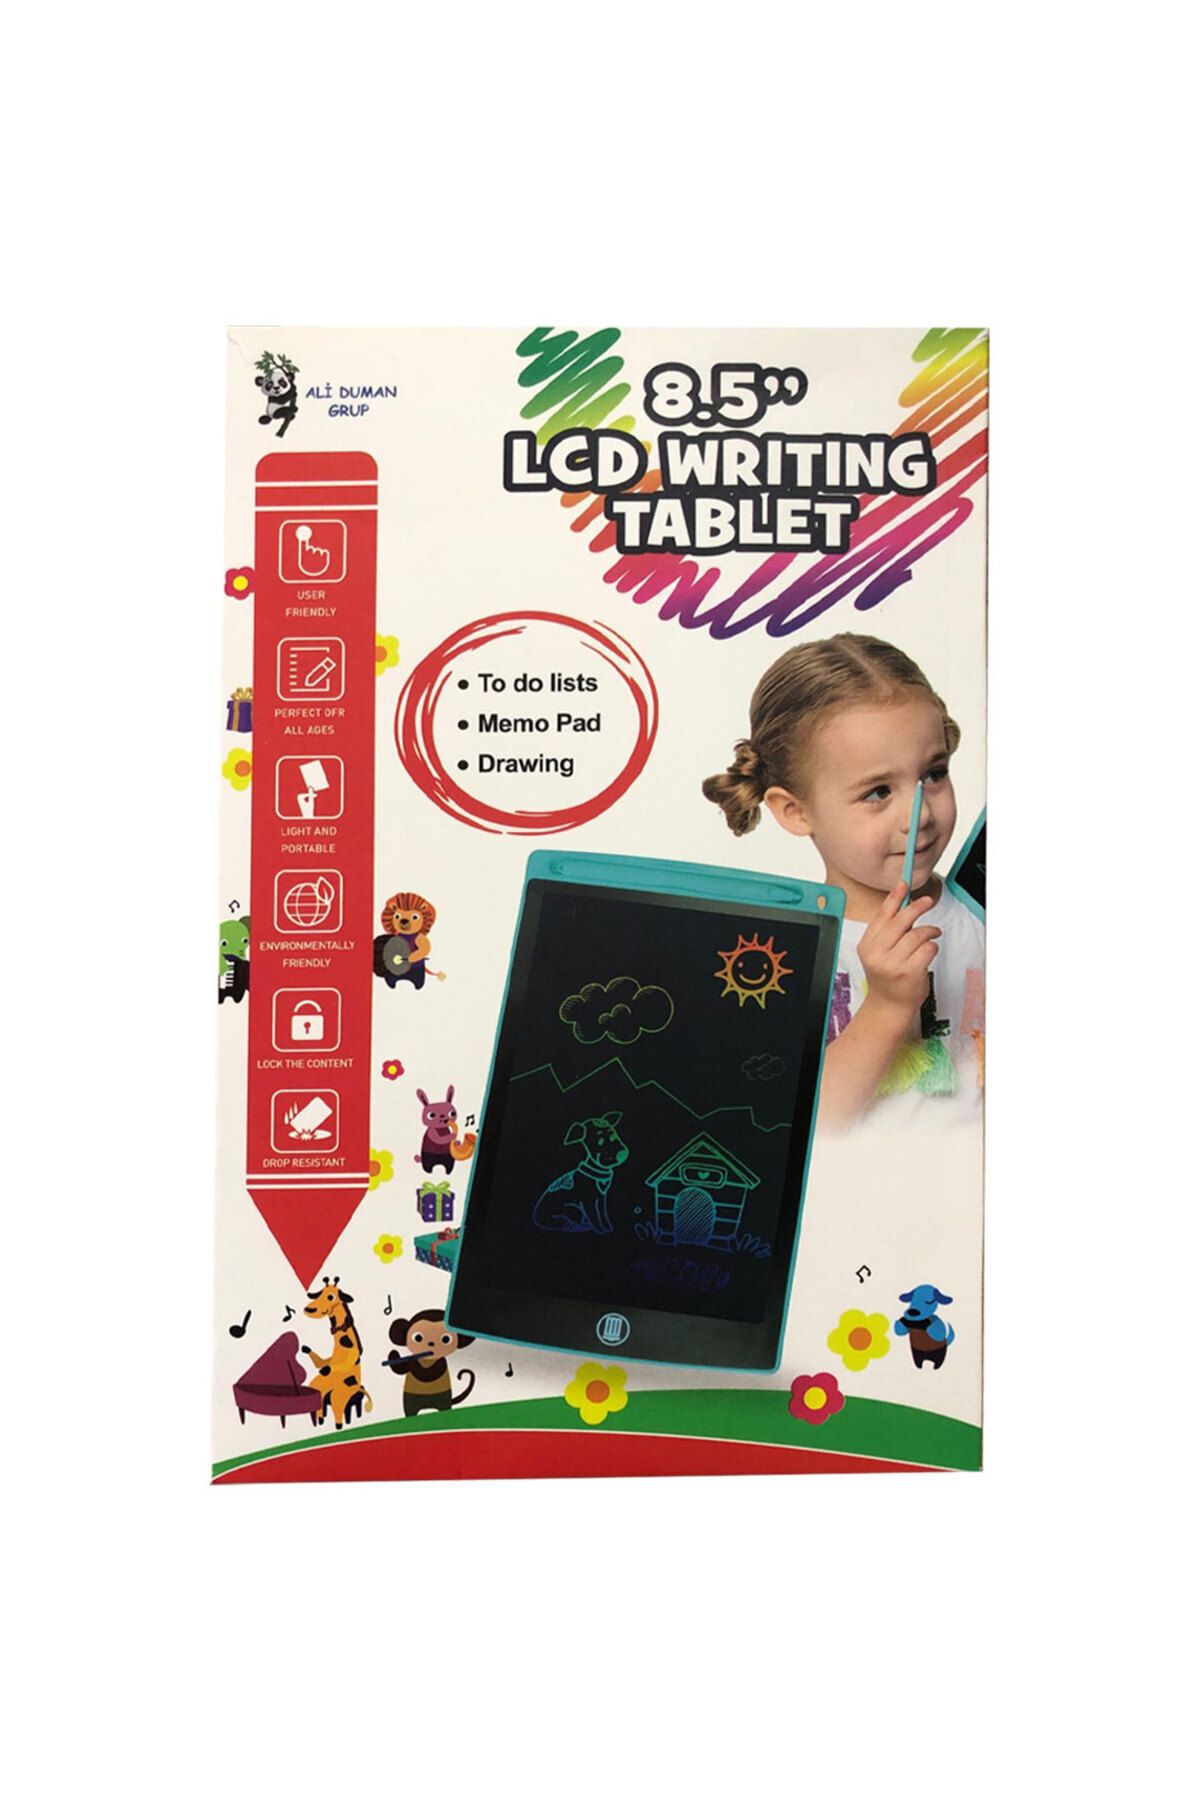 OYUNCAK STORE Hediyelik Renkli Writing Tablet Lcd 8.5 Inç Kalemli Çizim Yazı Tahtası Not Yazma Eğitim Tableti